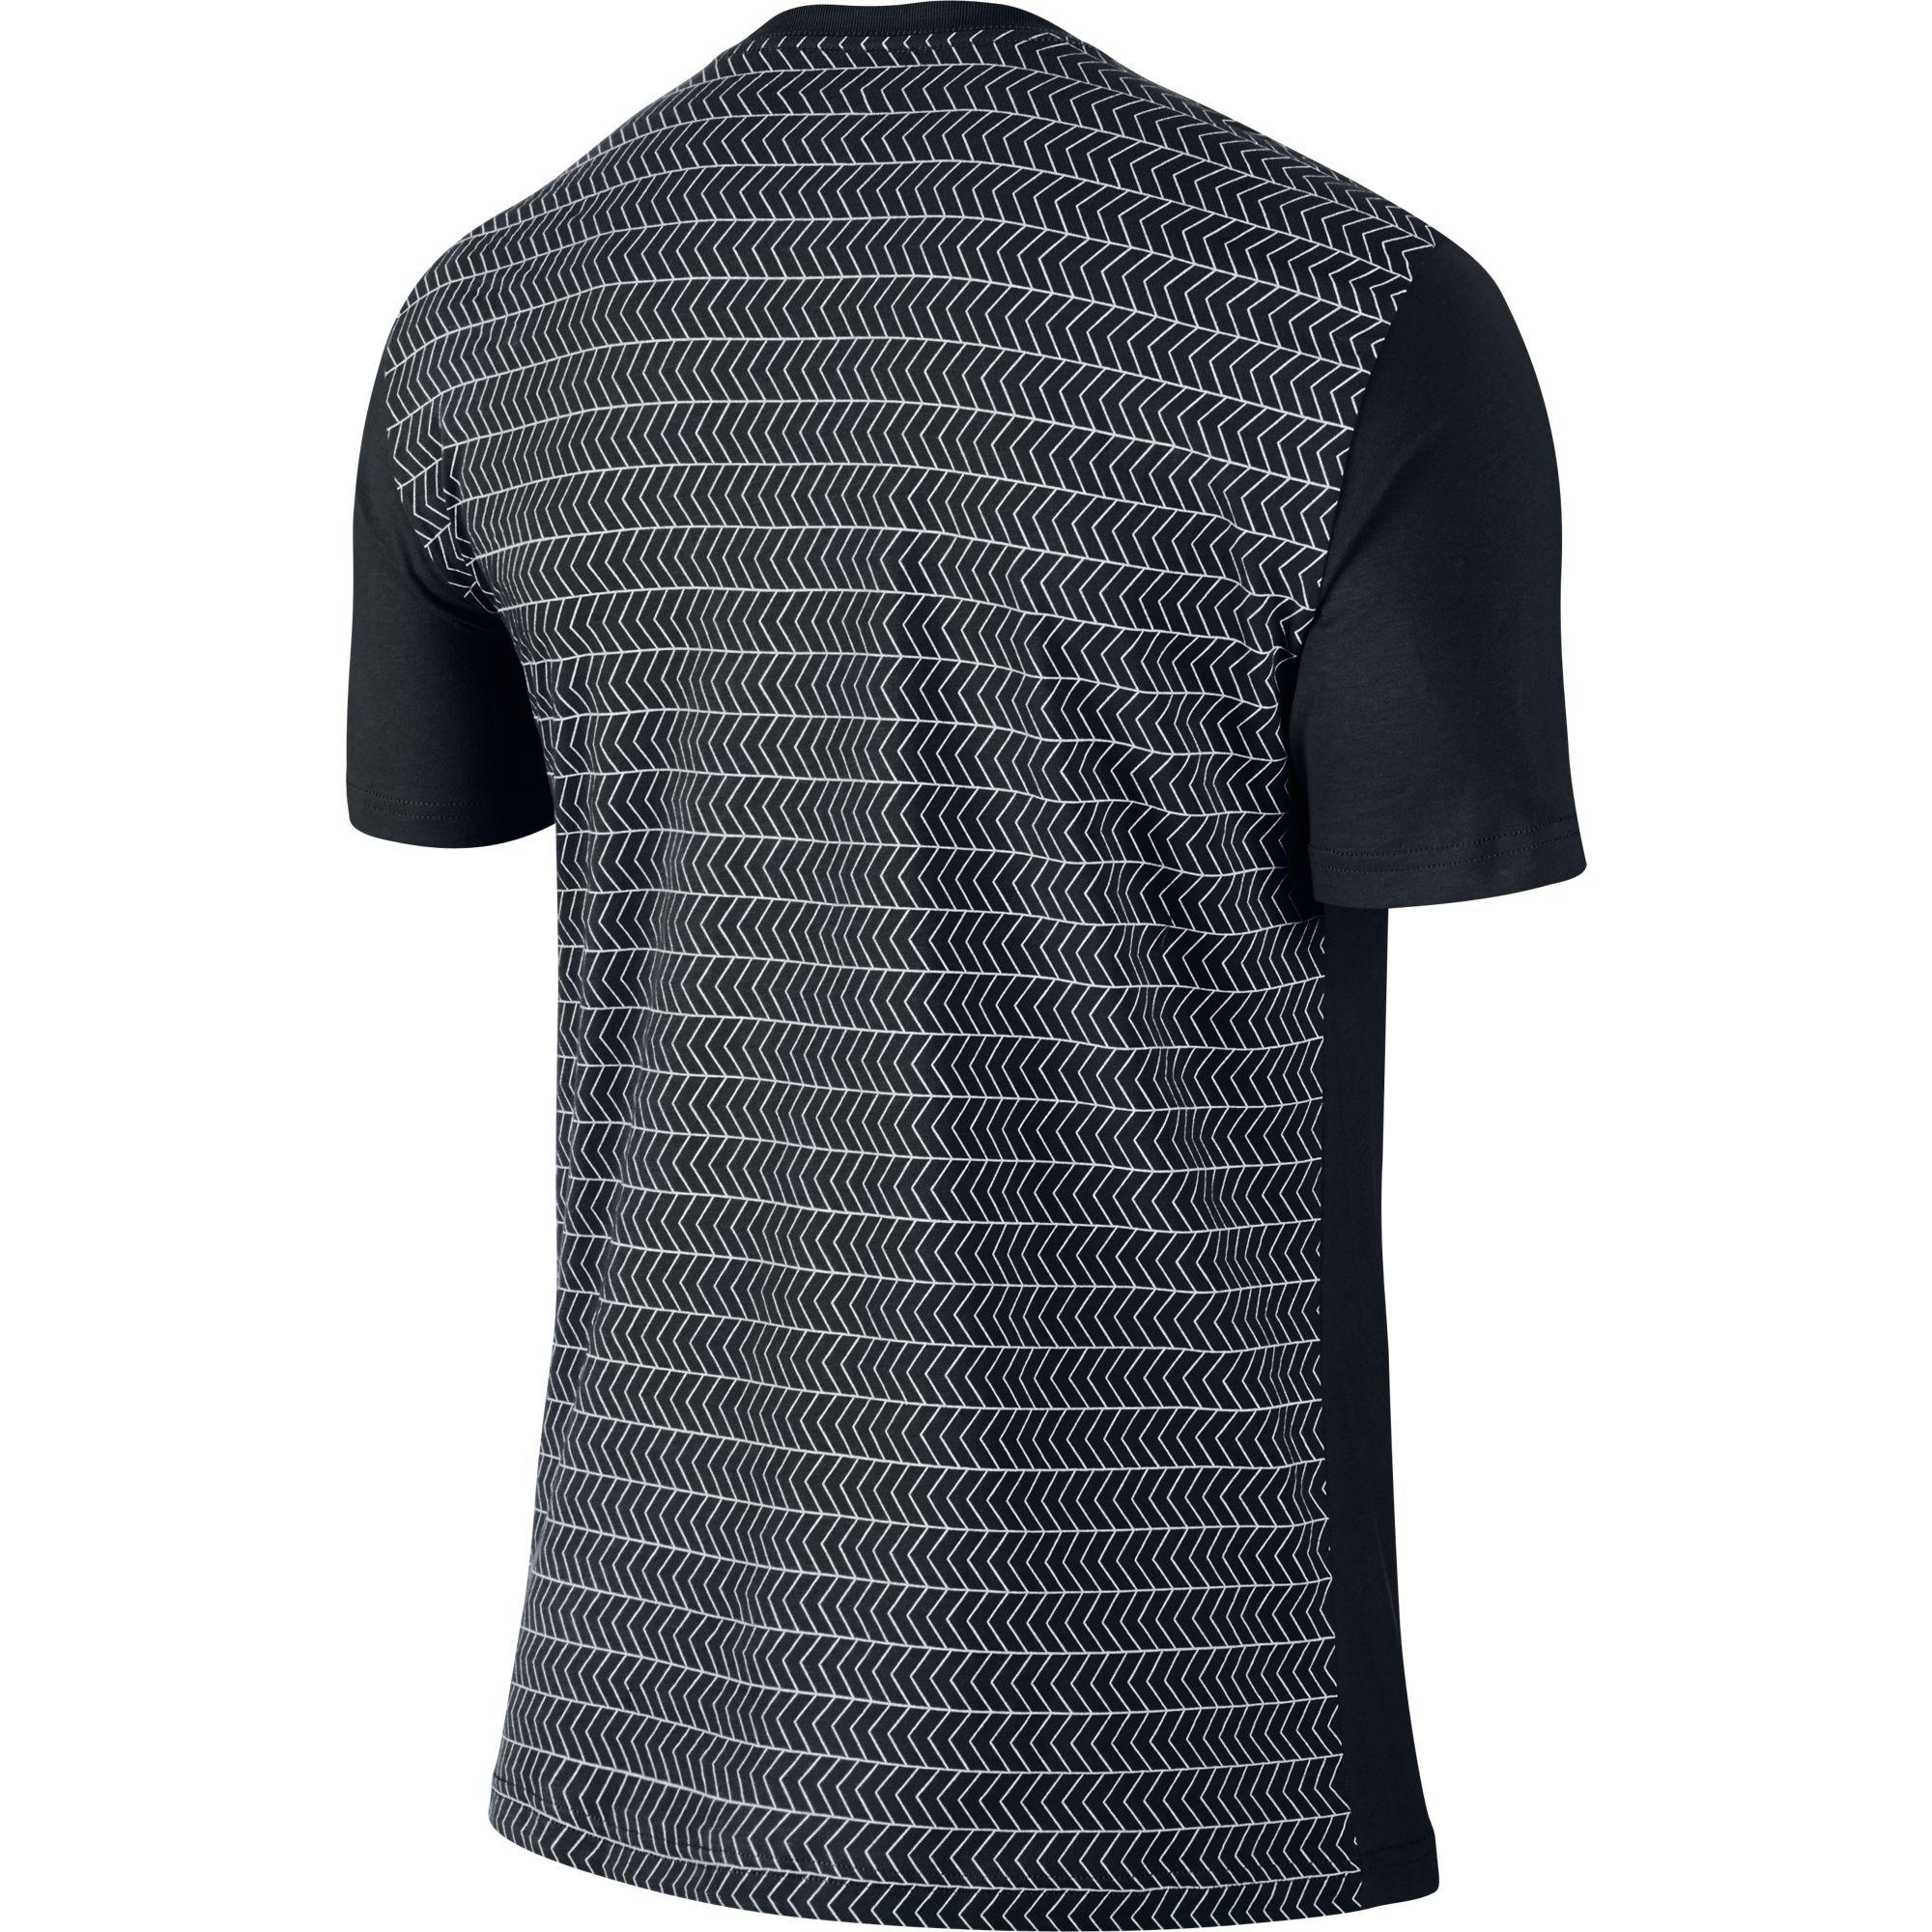 Nike Mens Premier RF V-Neck T-Shirt - Black/White - Tennisnuts.com